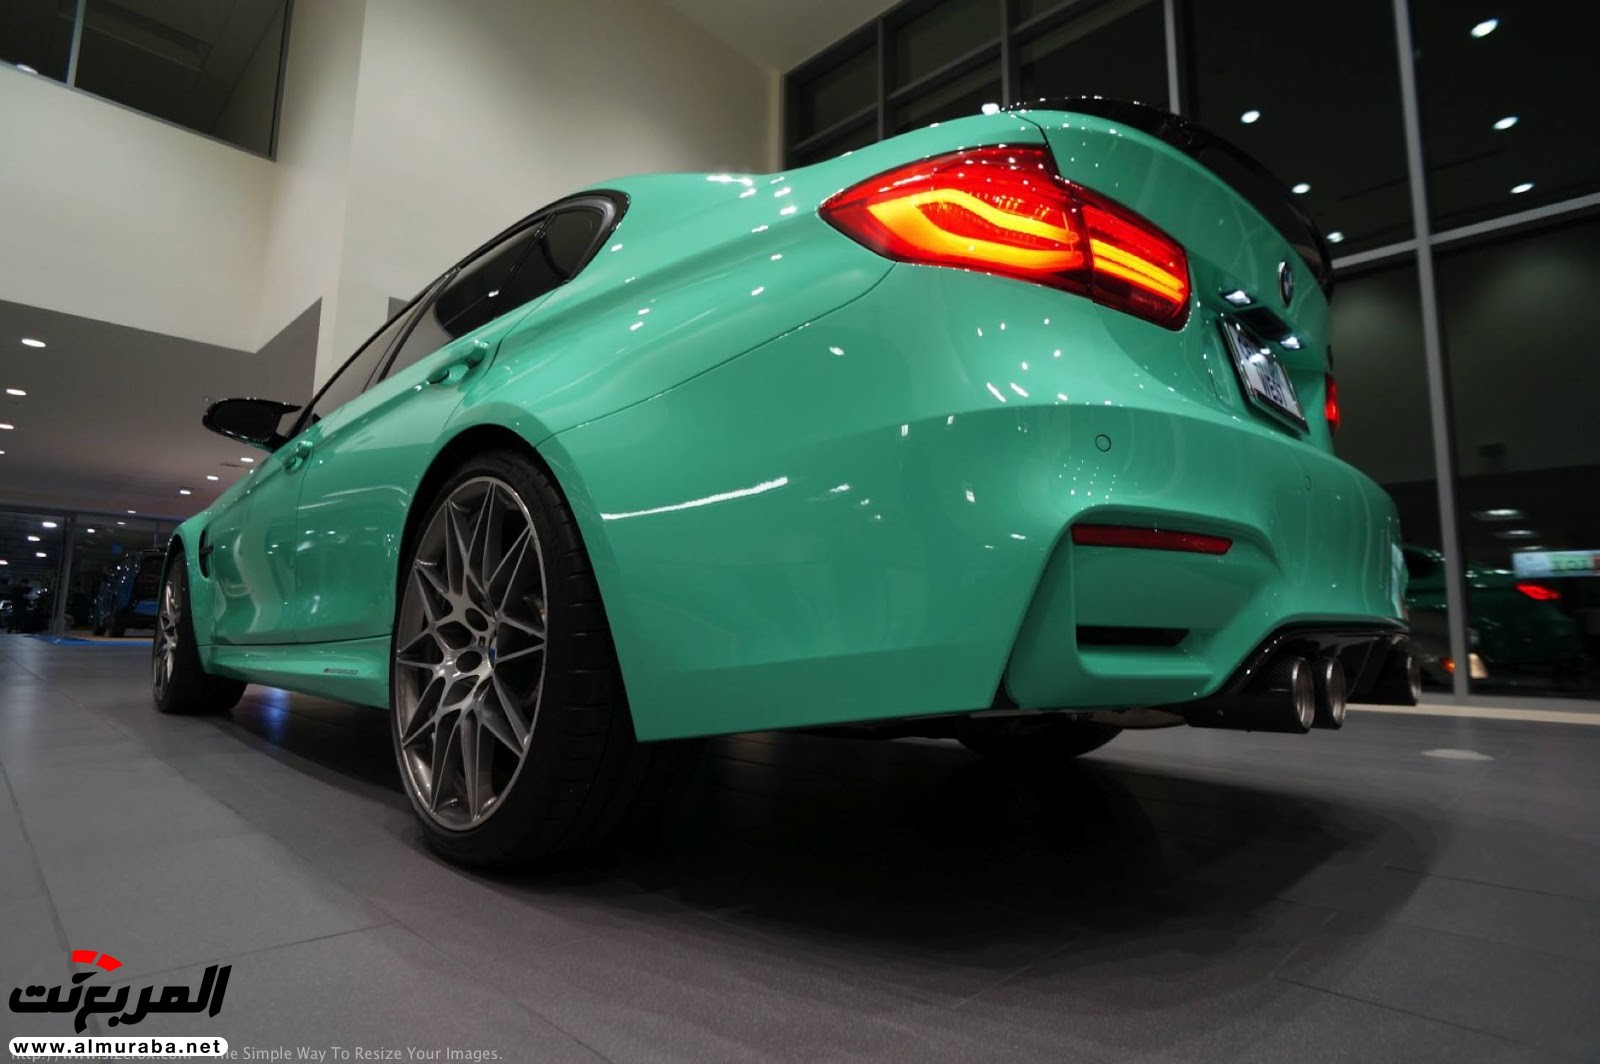 "بالصور" شاهد "بي إم دبليو" F80 M3 الخاصة بطلاء النعناع الأخضر BMW 94